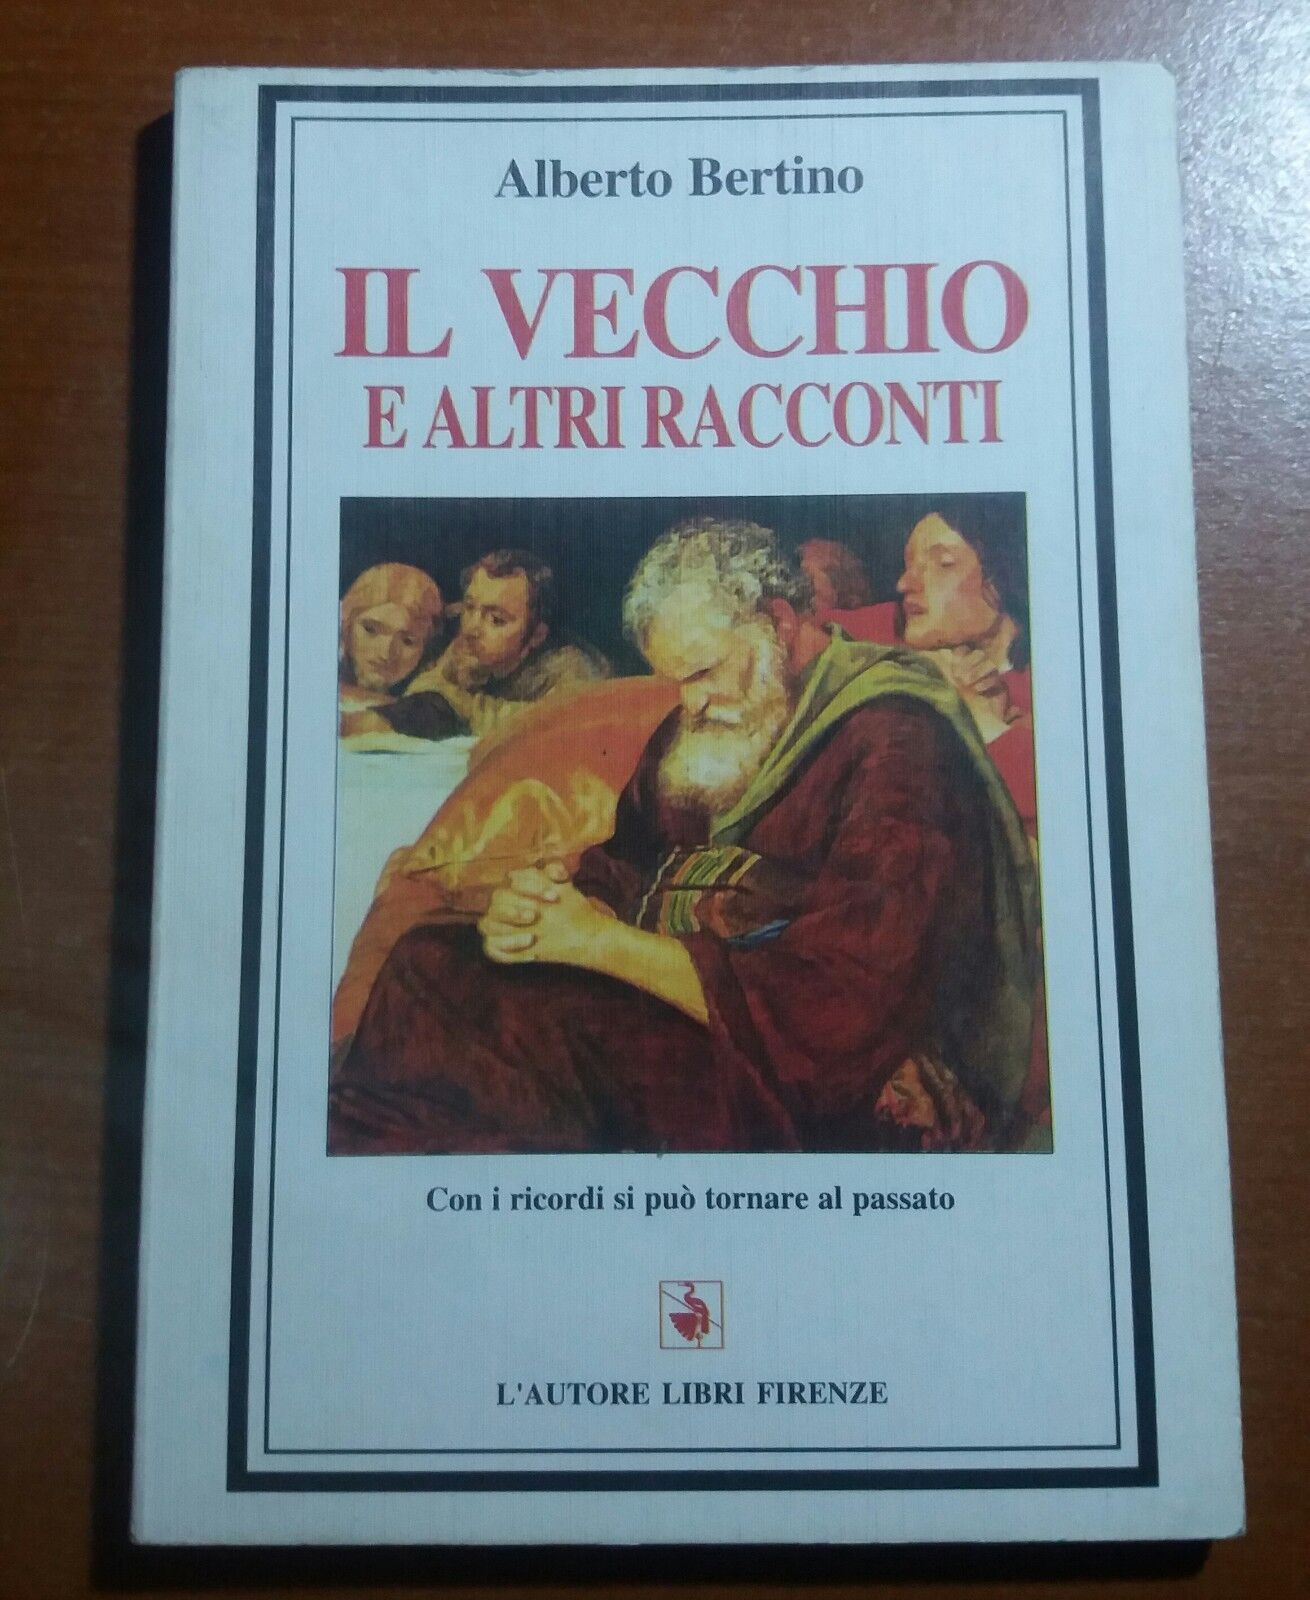 Il vecchio e altri racconti -Alberto Bertino - Libri Firenze - 1996 - M